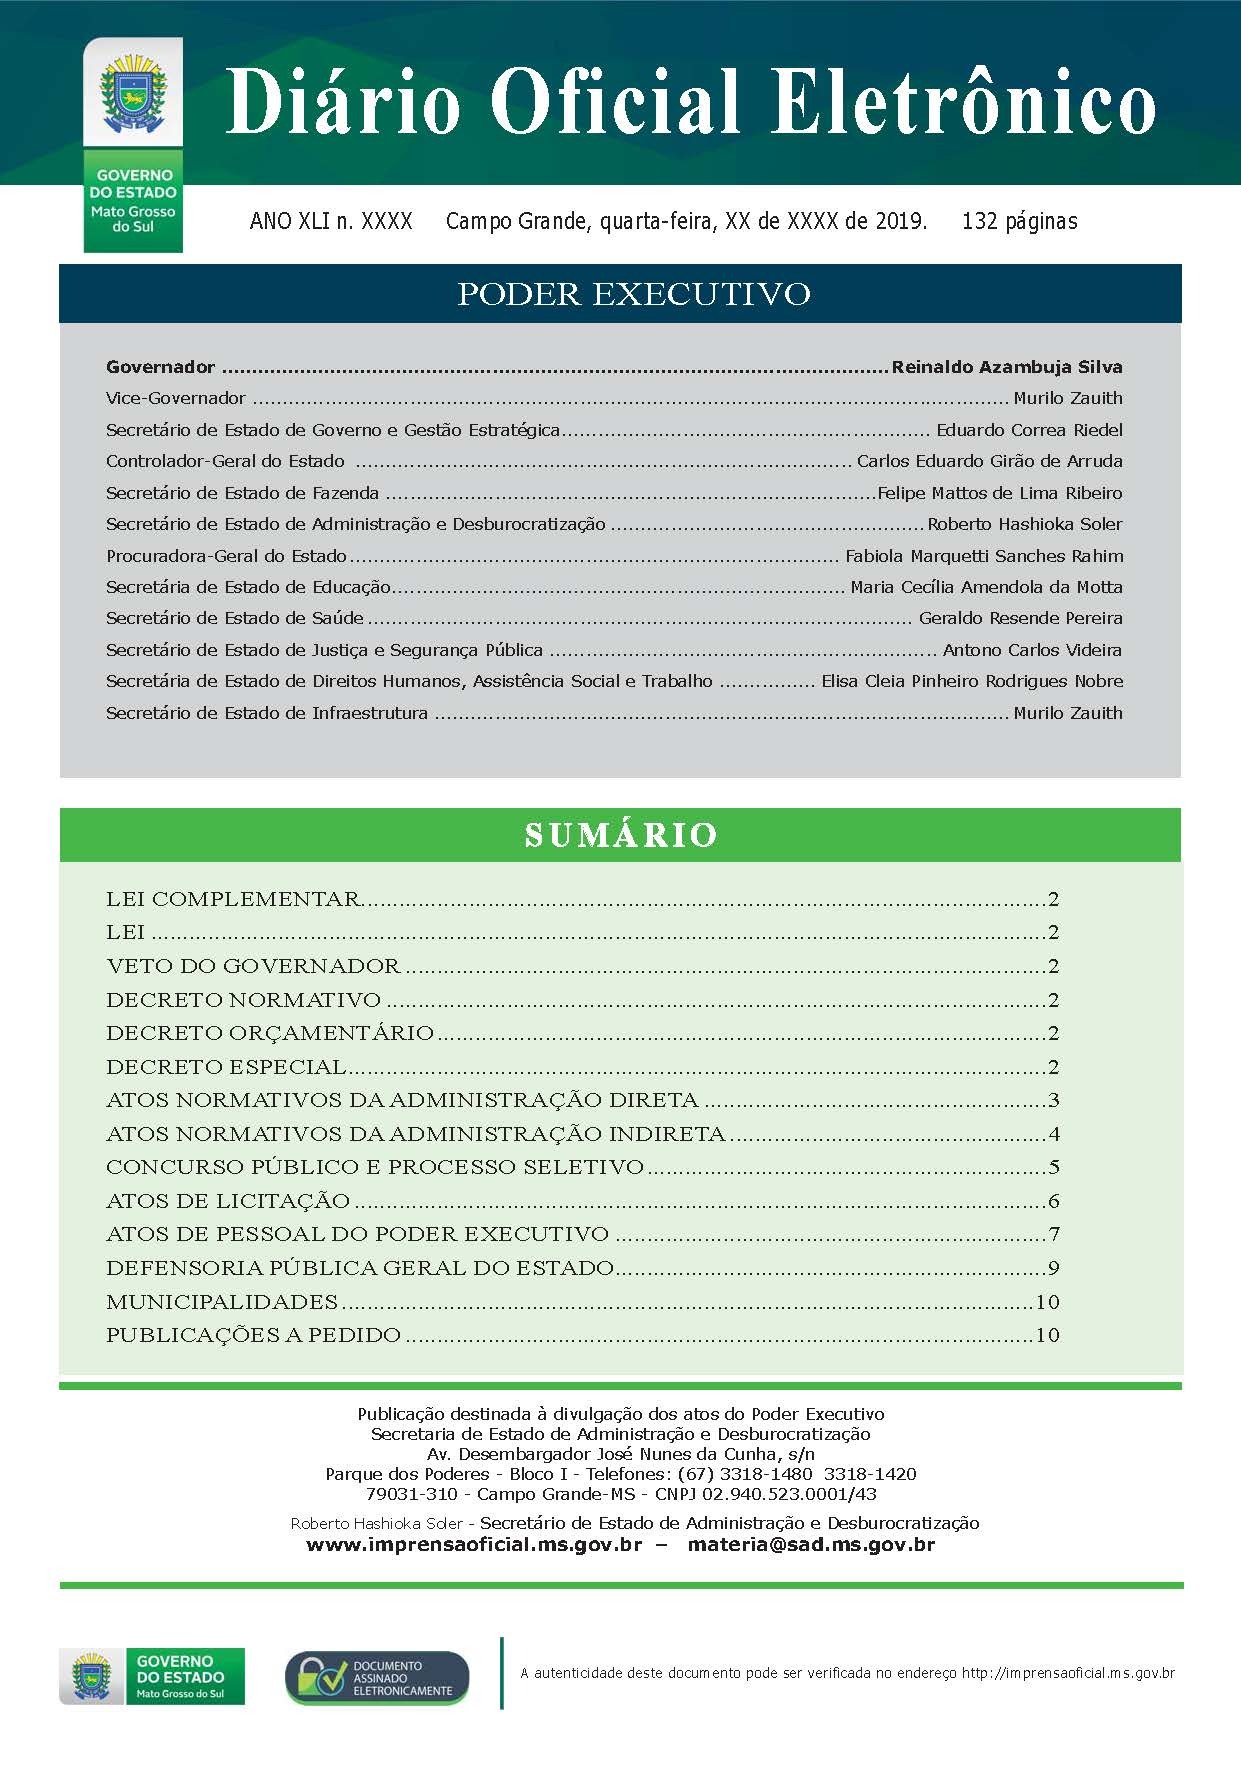 Prévia do novo layout disponibilizada pelo Núcleo de Editoração do Diário Oficial Eletrônico do Estado.